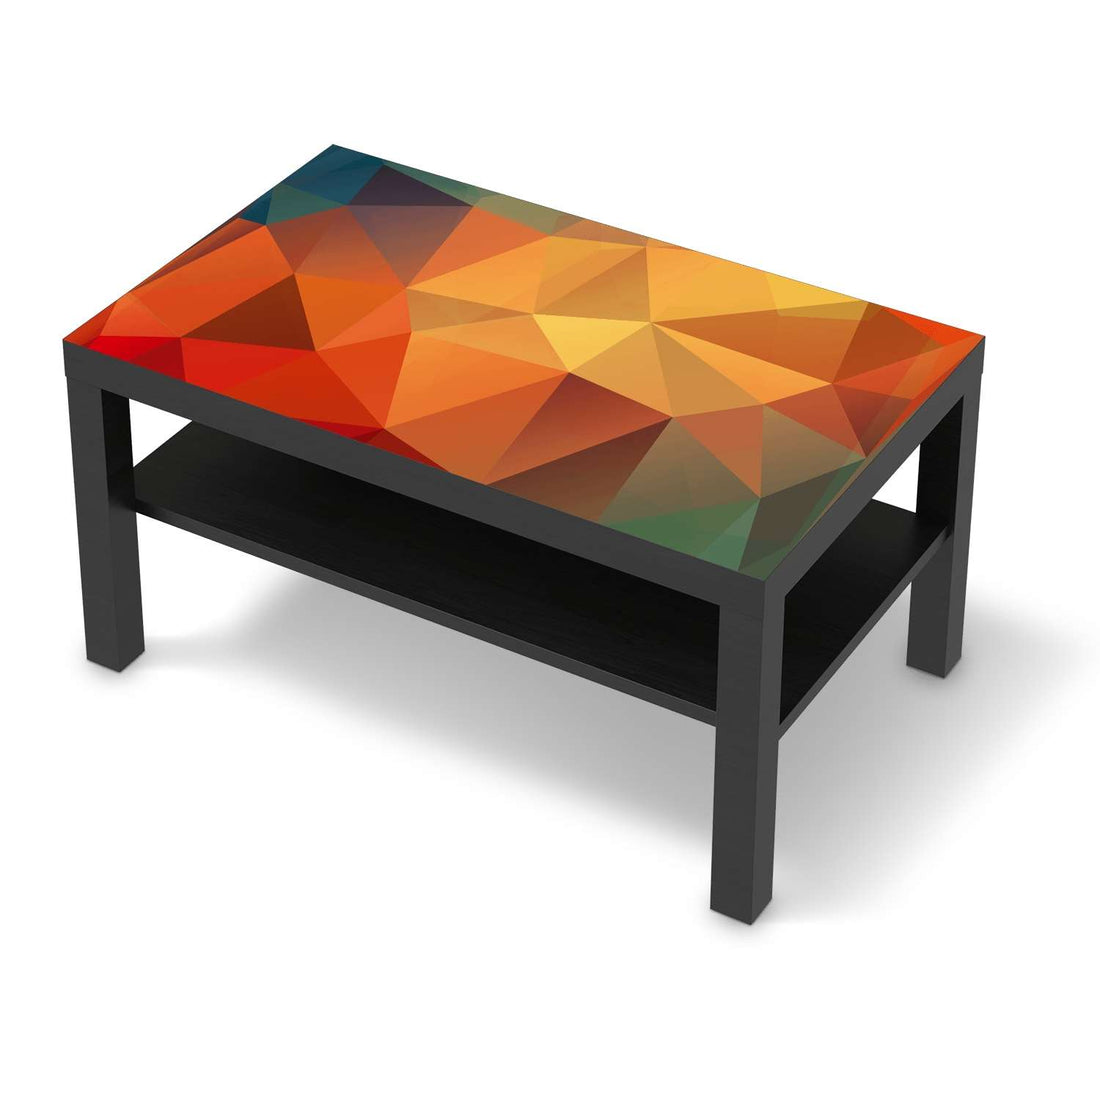 Möbelfolie Polygon - IKEA Lack Tisch 90x55 cm - schwarz